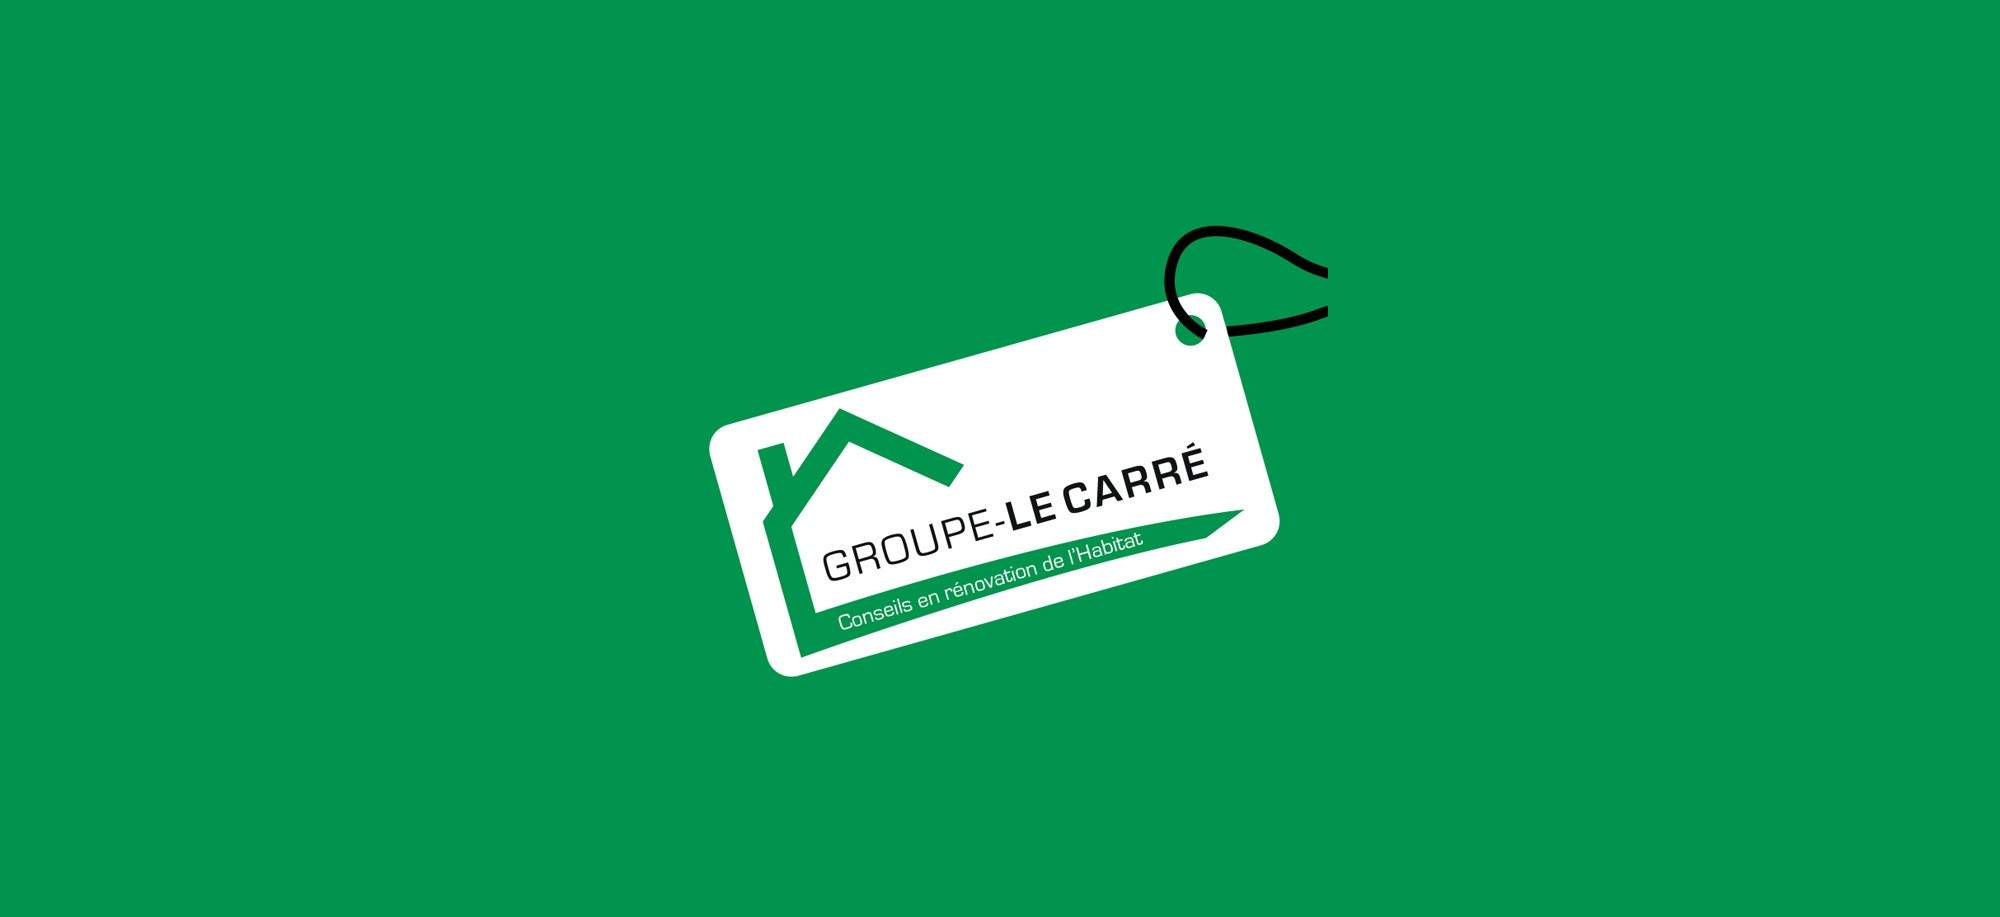 Logo CRH Groupe Le Carré installation de chauffage solaire thermique Bas-Rhin 67